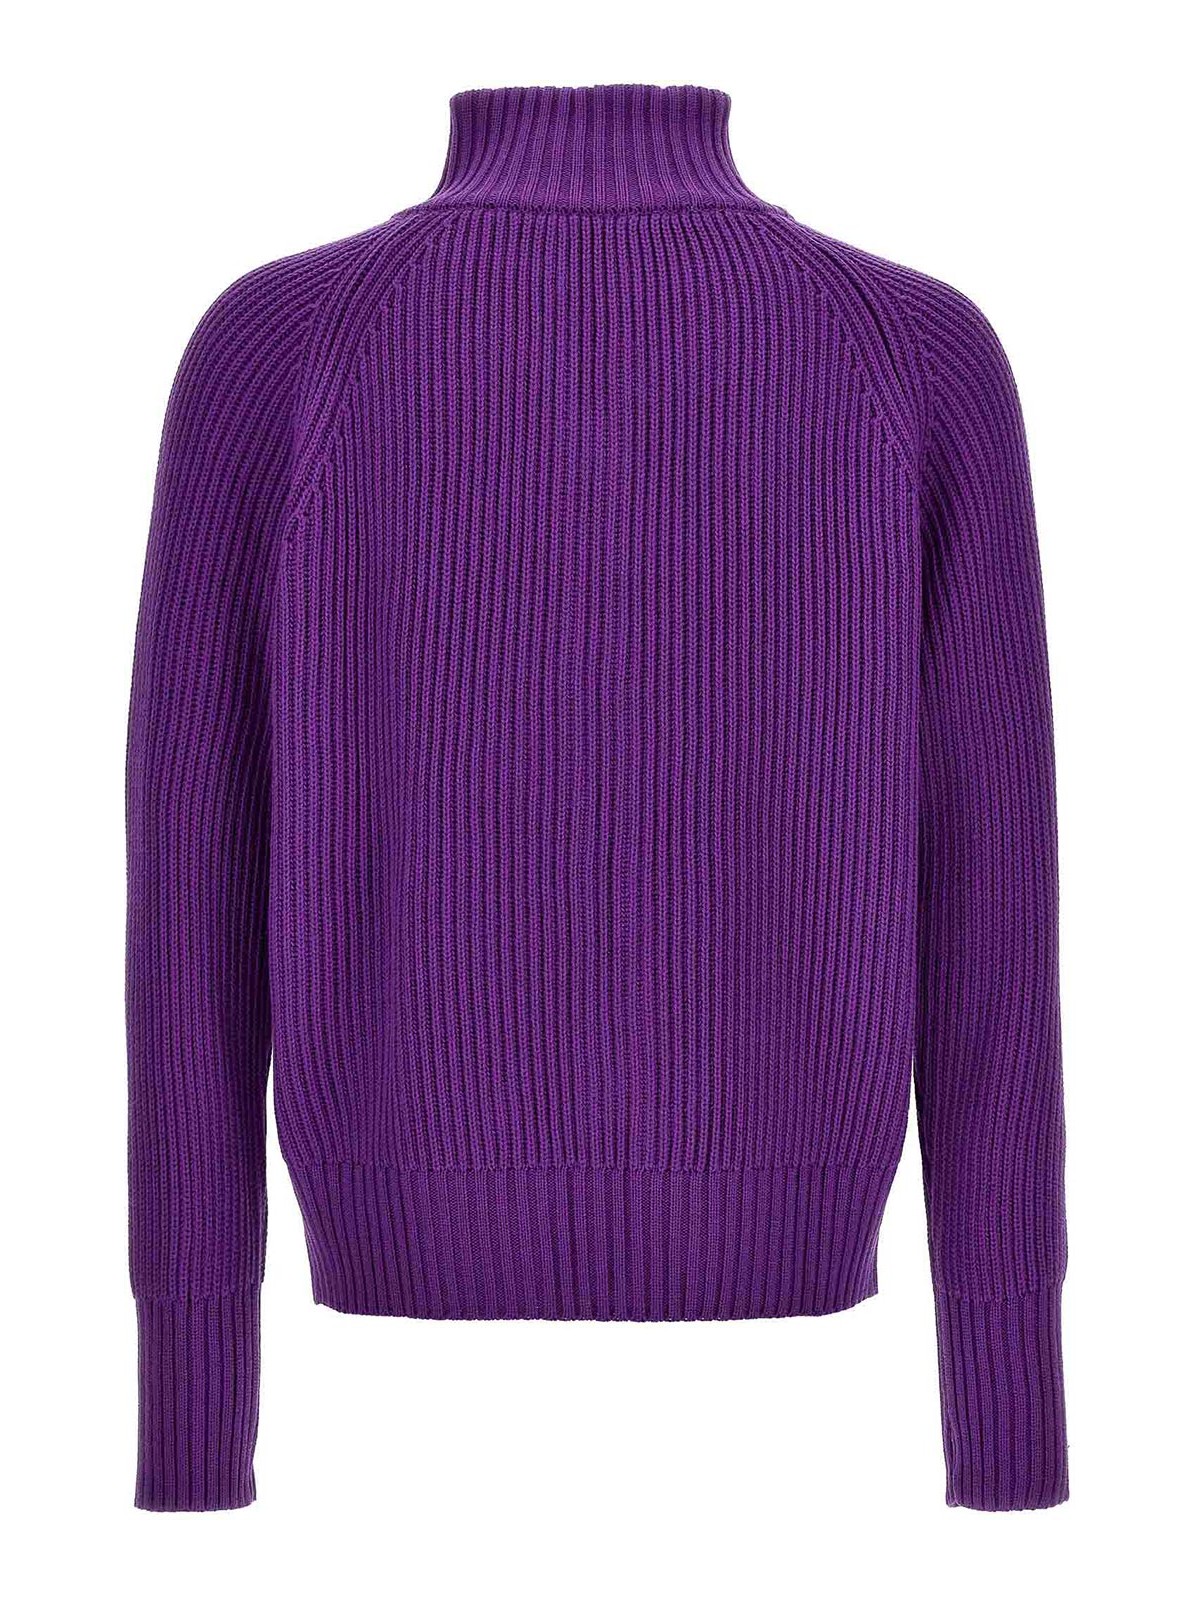 Shop Lc23 English Cardigan In Purple